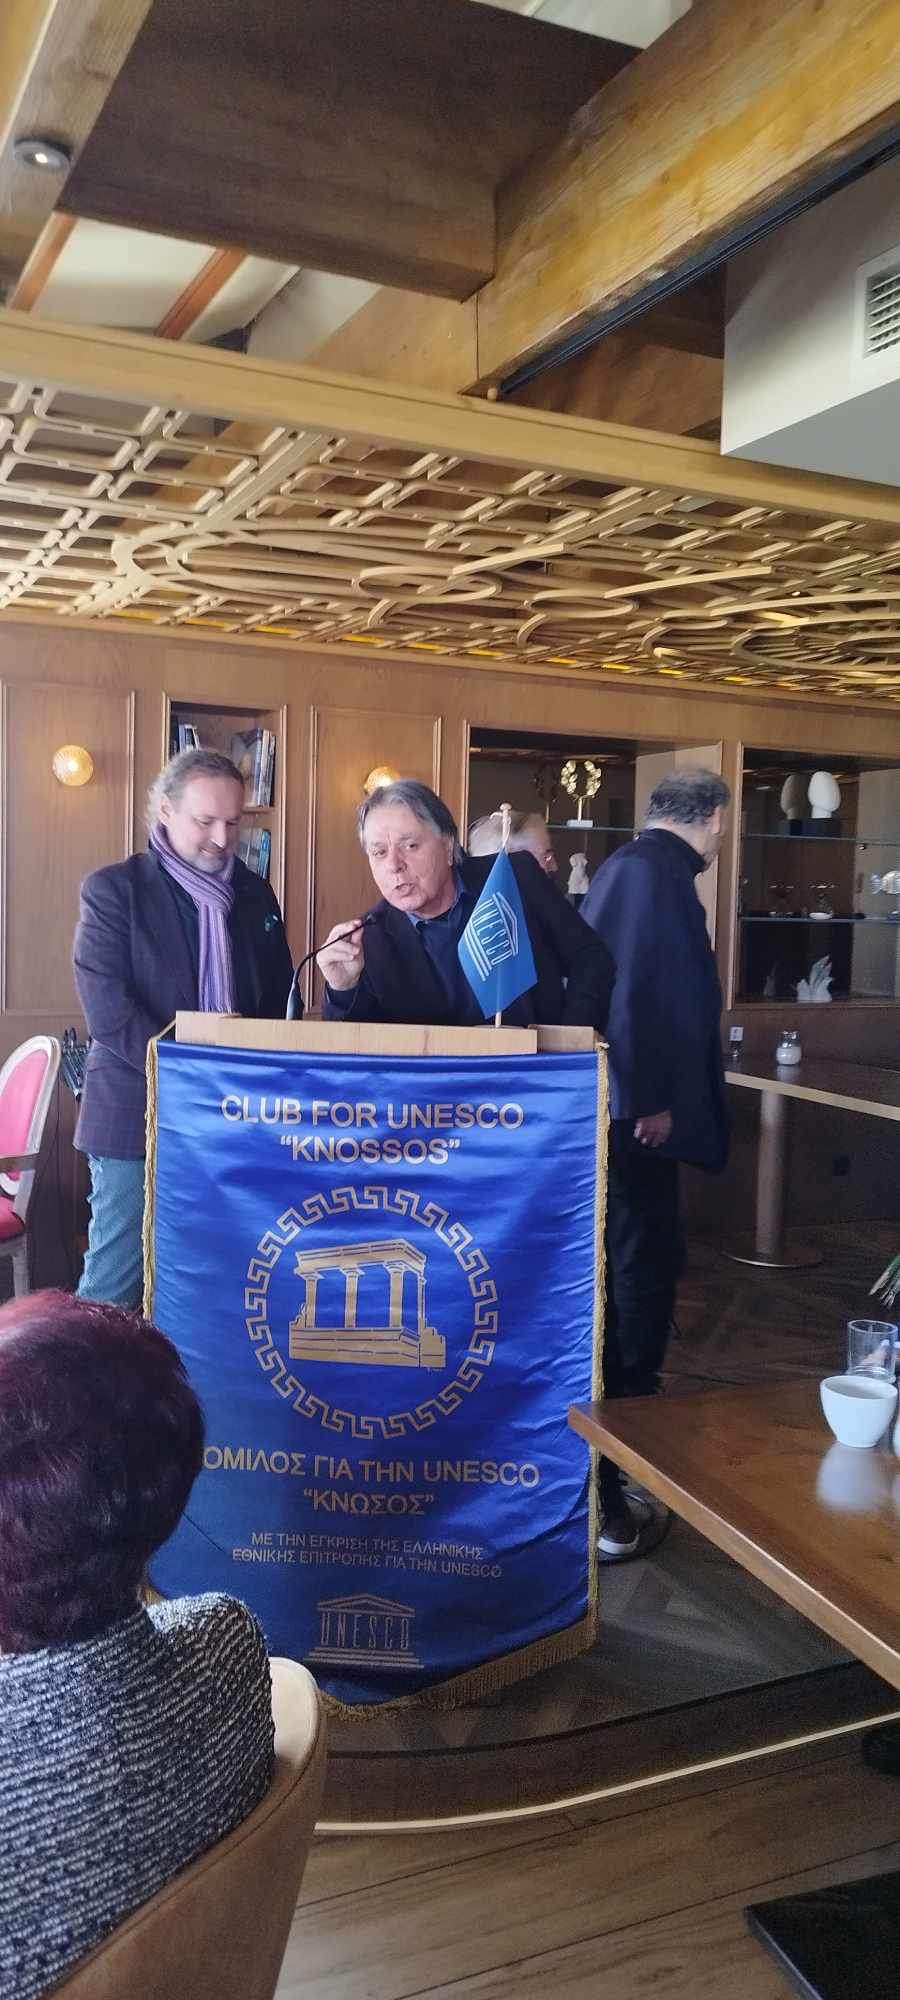 Ο Όμιλος για την UNESCO «Κνωσός» βράβευσε τον Γιώργο Αντωνάκη